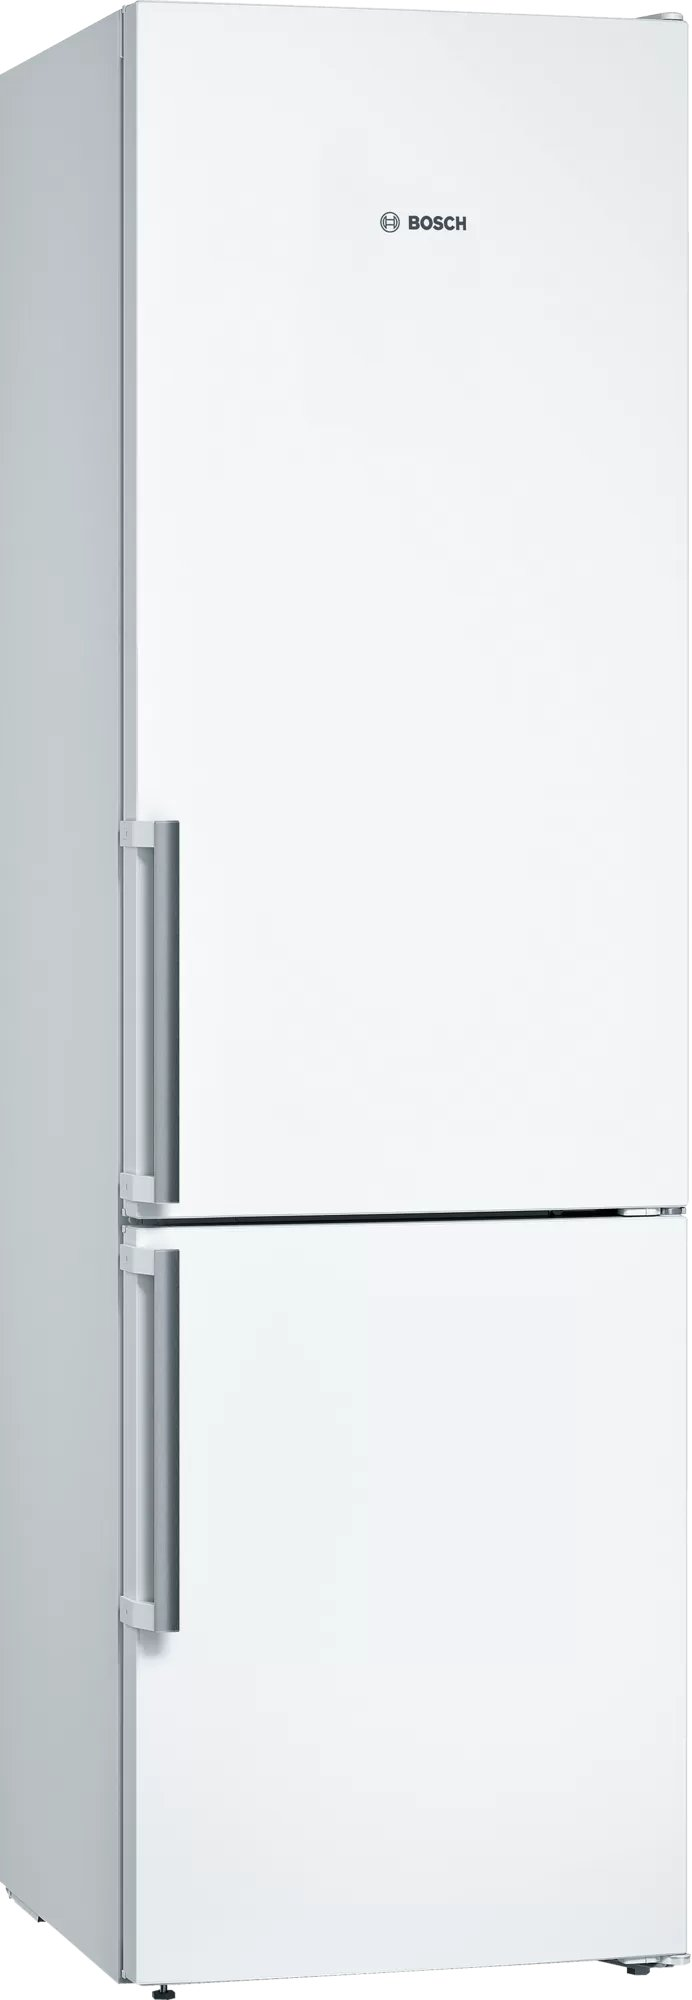 Холодильник Bosch KGN39VWEQ белый холодильник bosch kgn39lb30u